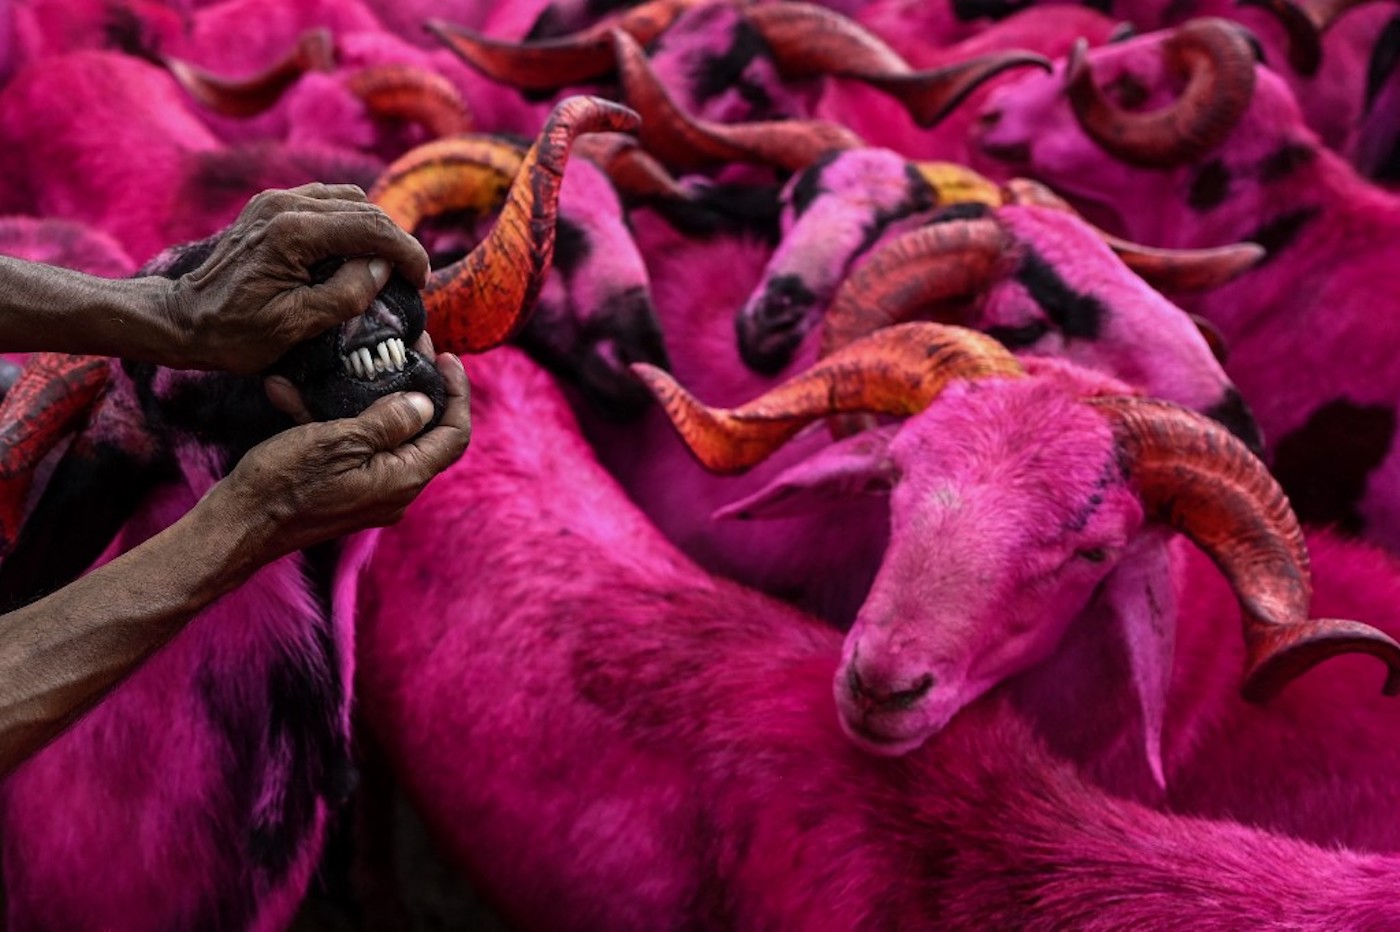 Au marché aux bestiaux de Chennaï, sur la côte-est de l’Inde, les animaux sont recouverts de poudre colorée, le 17 juillet 2021 (AFP/Arun Sankar)